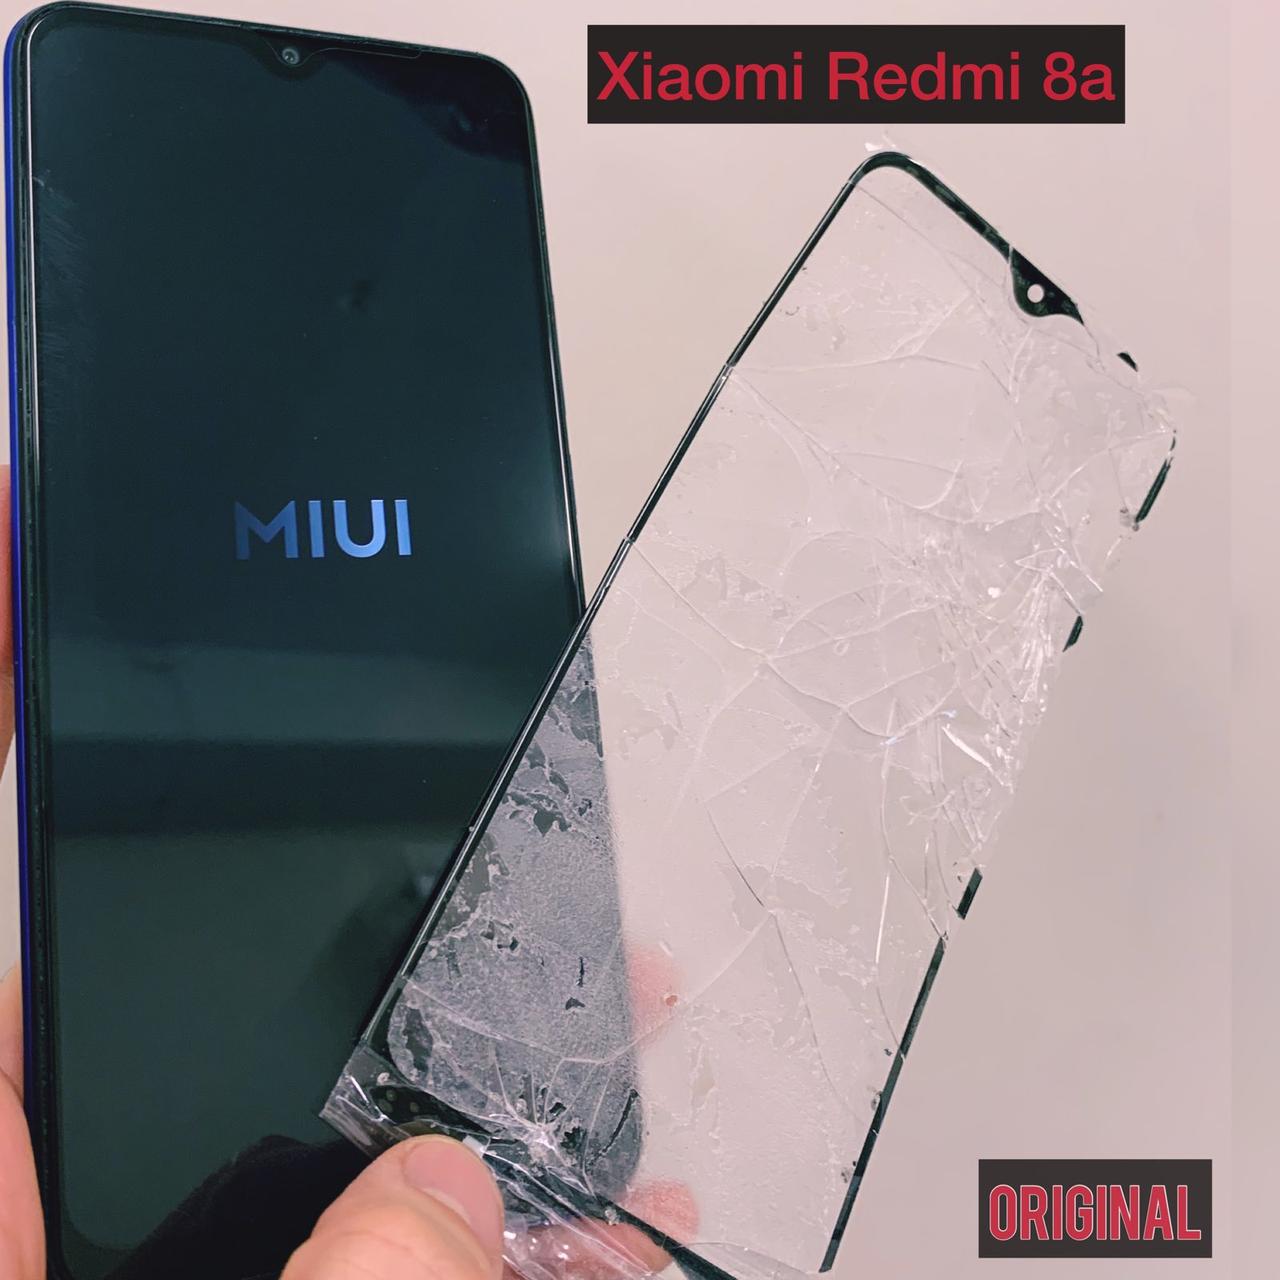 Ремонт Xiaomi Redmi 8a / замена стекла, экрана, батареи.